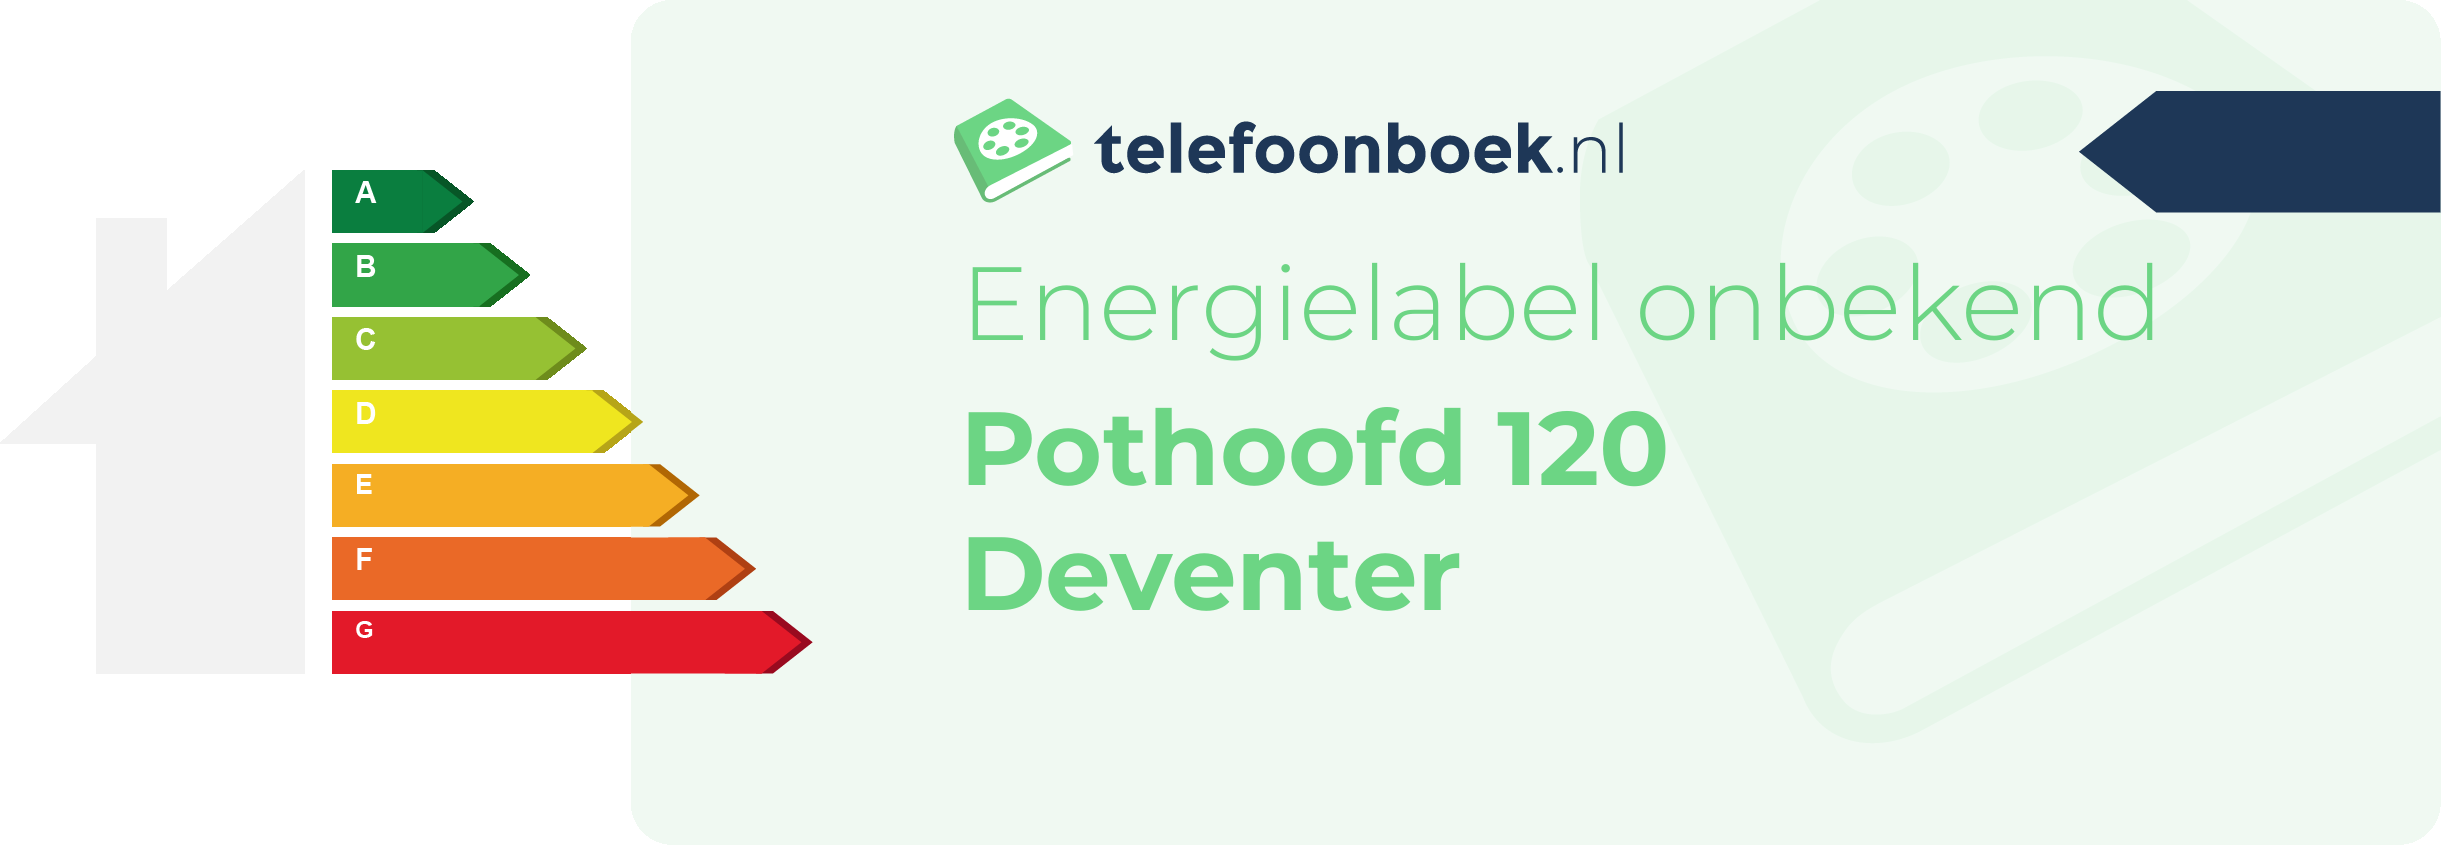 Energielabel Pothoofd 120 Deventer